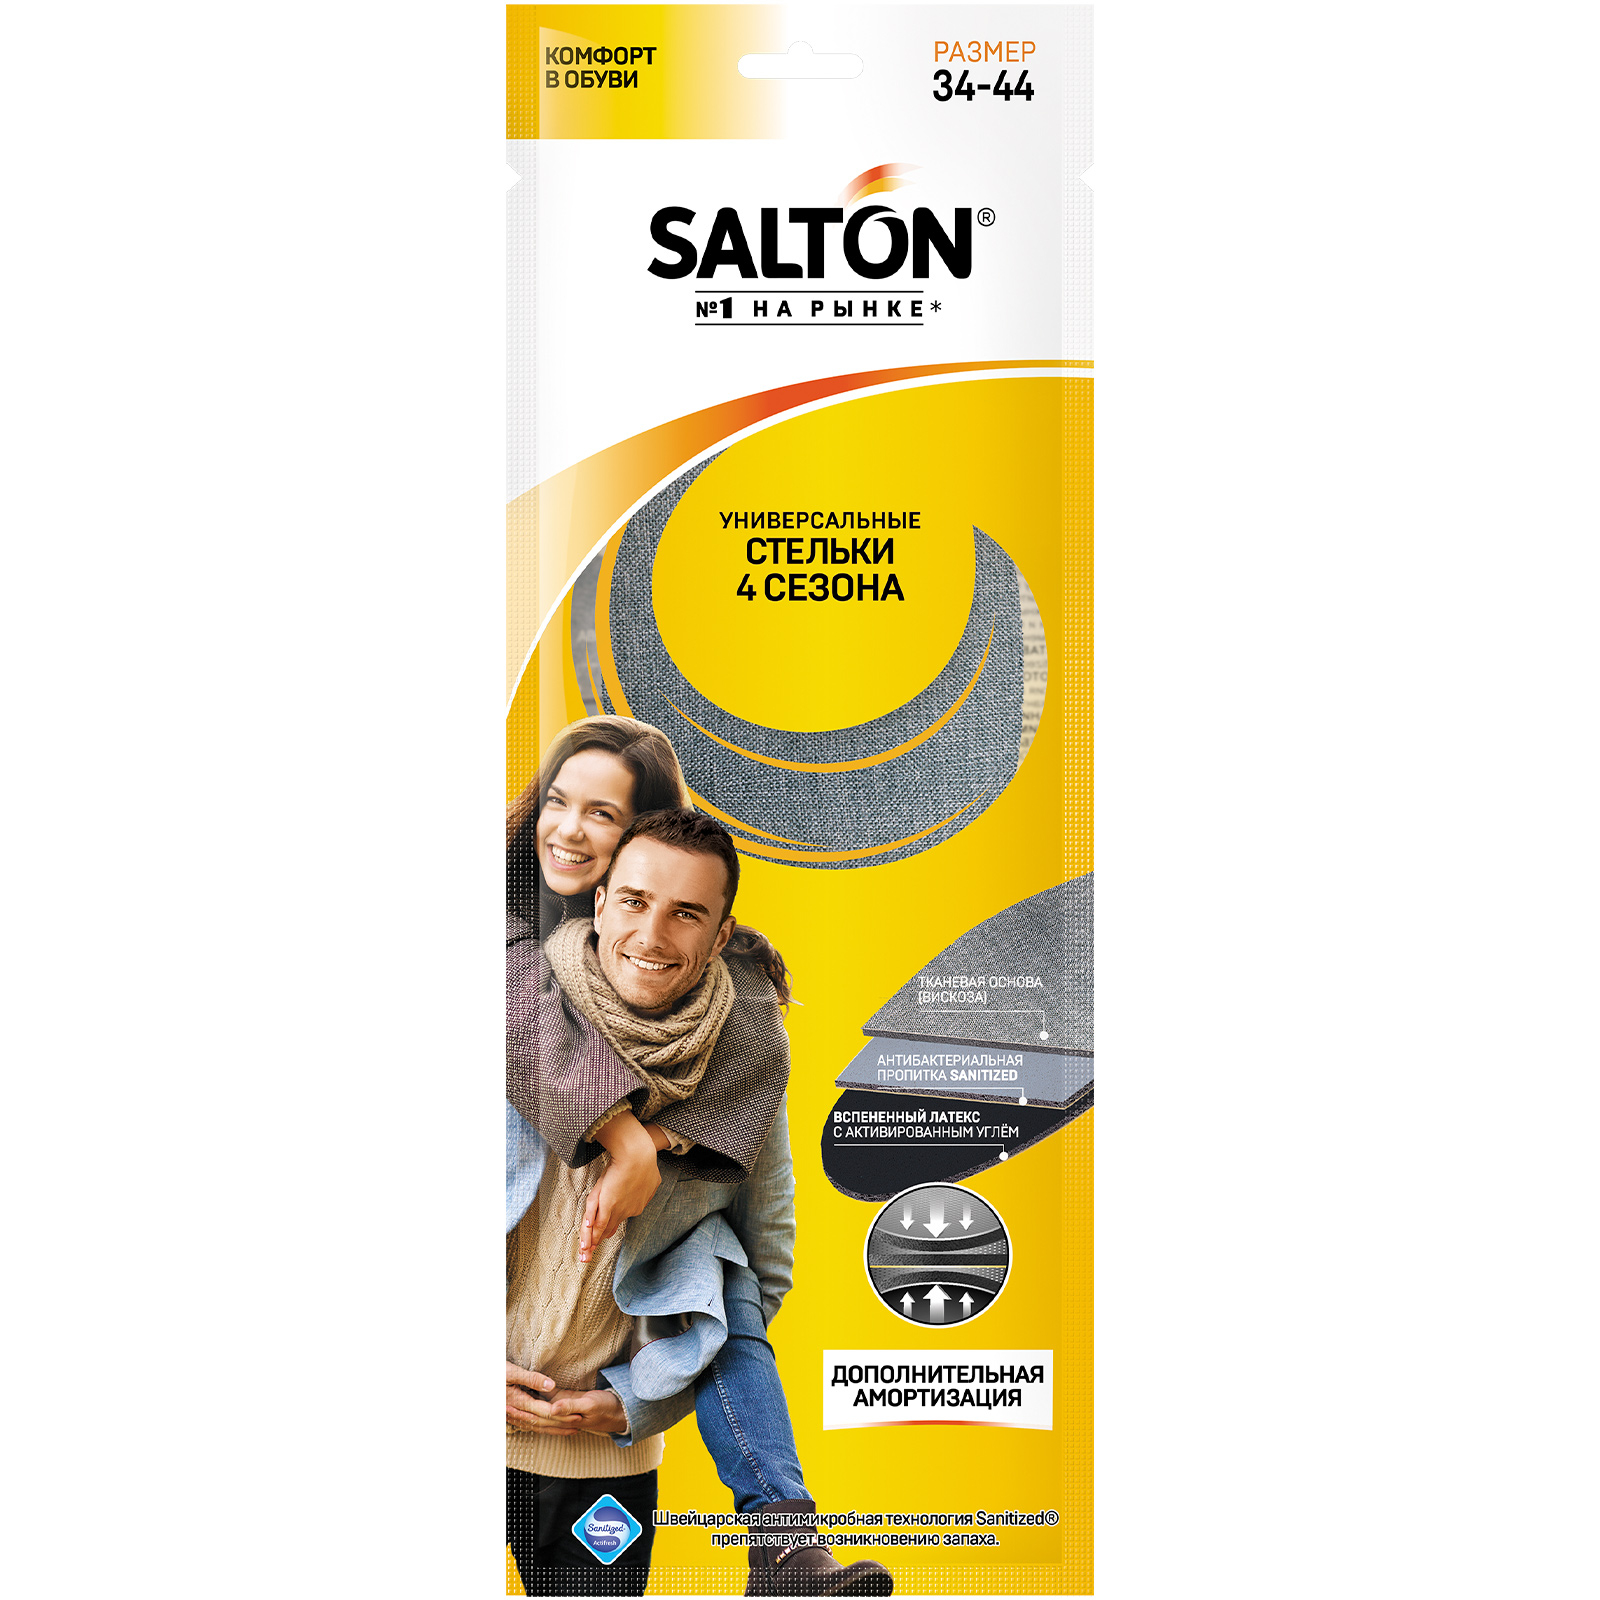 Стельки для обуви Salton, универсальные, 4 сезона фасовочные пакеты четыре сезона